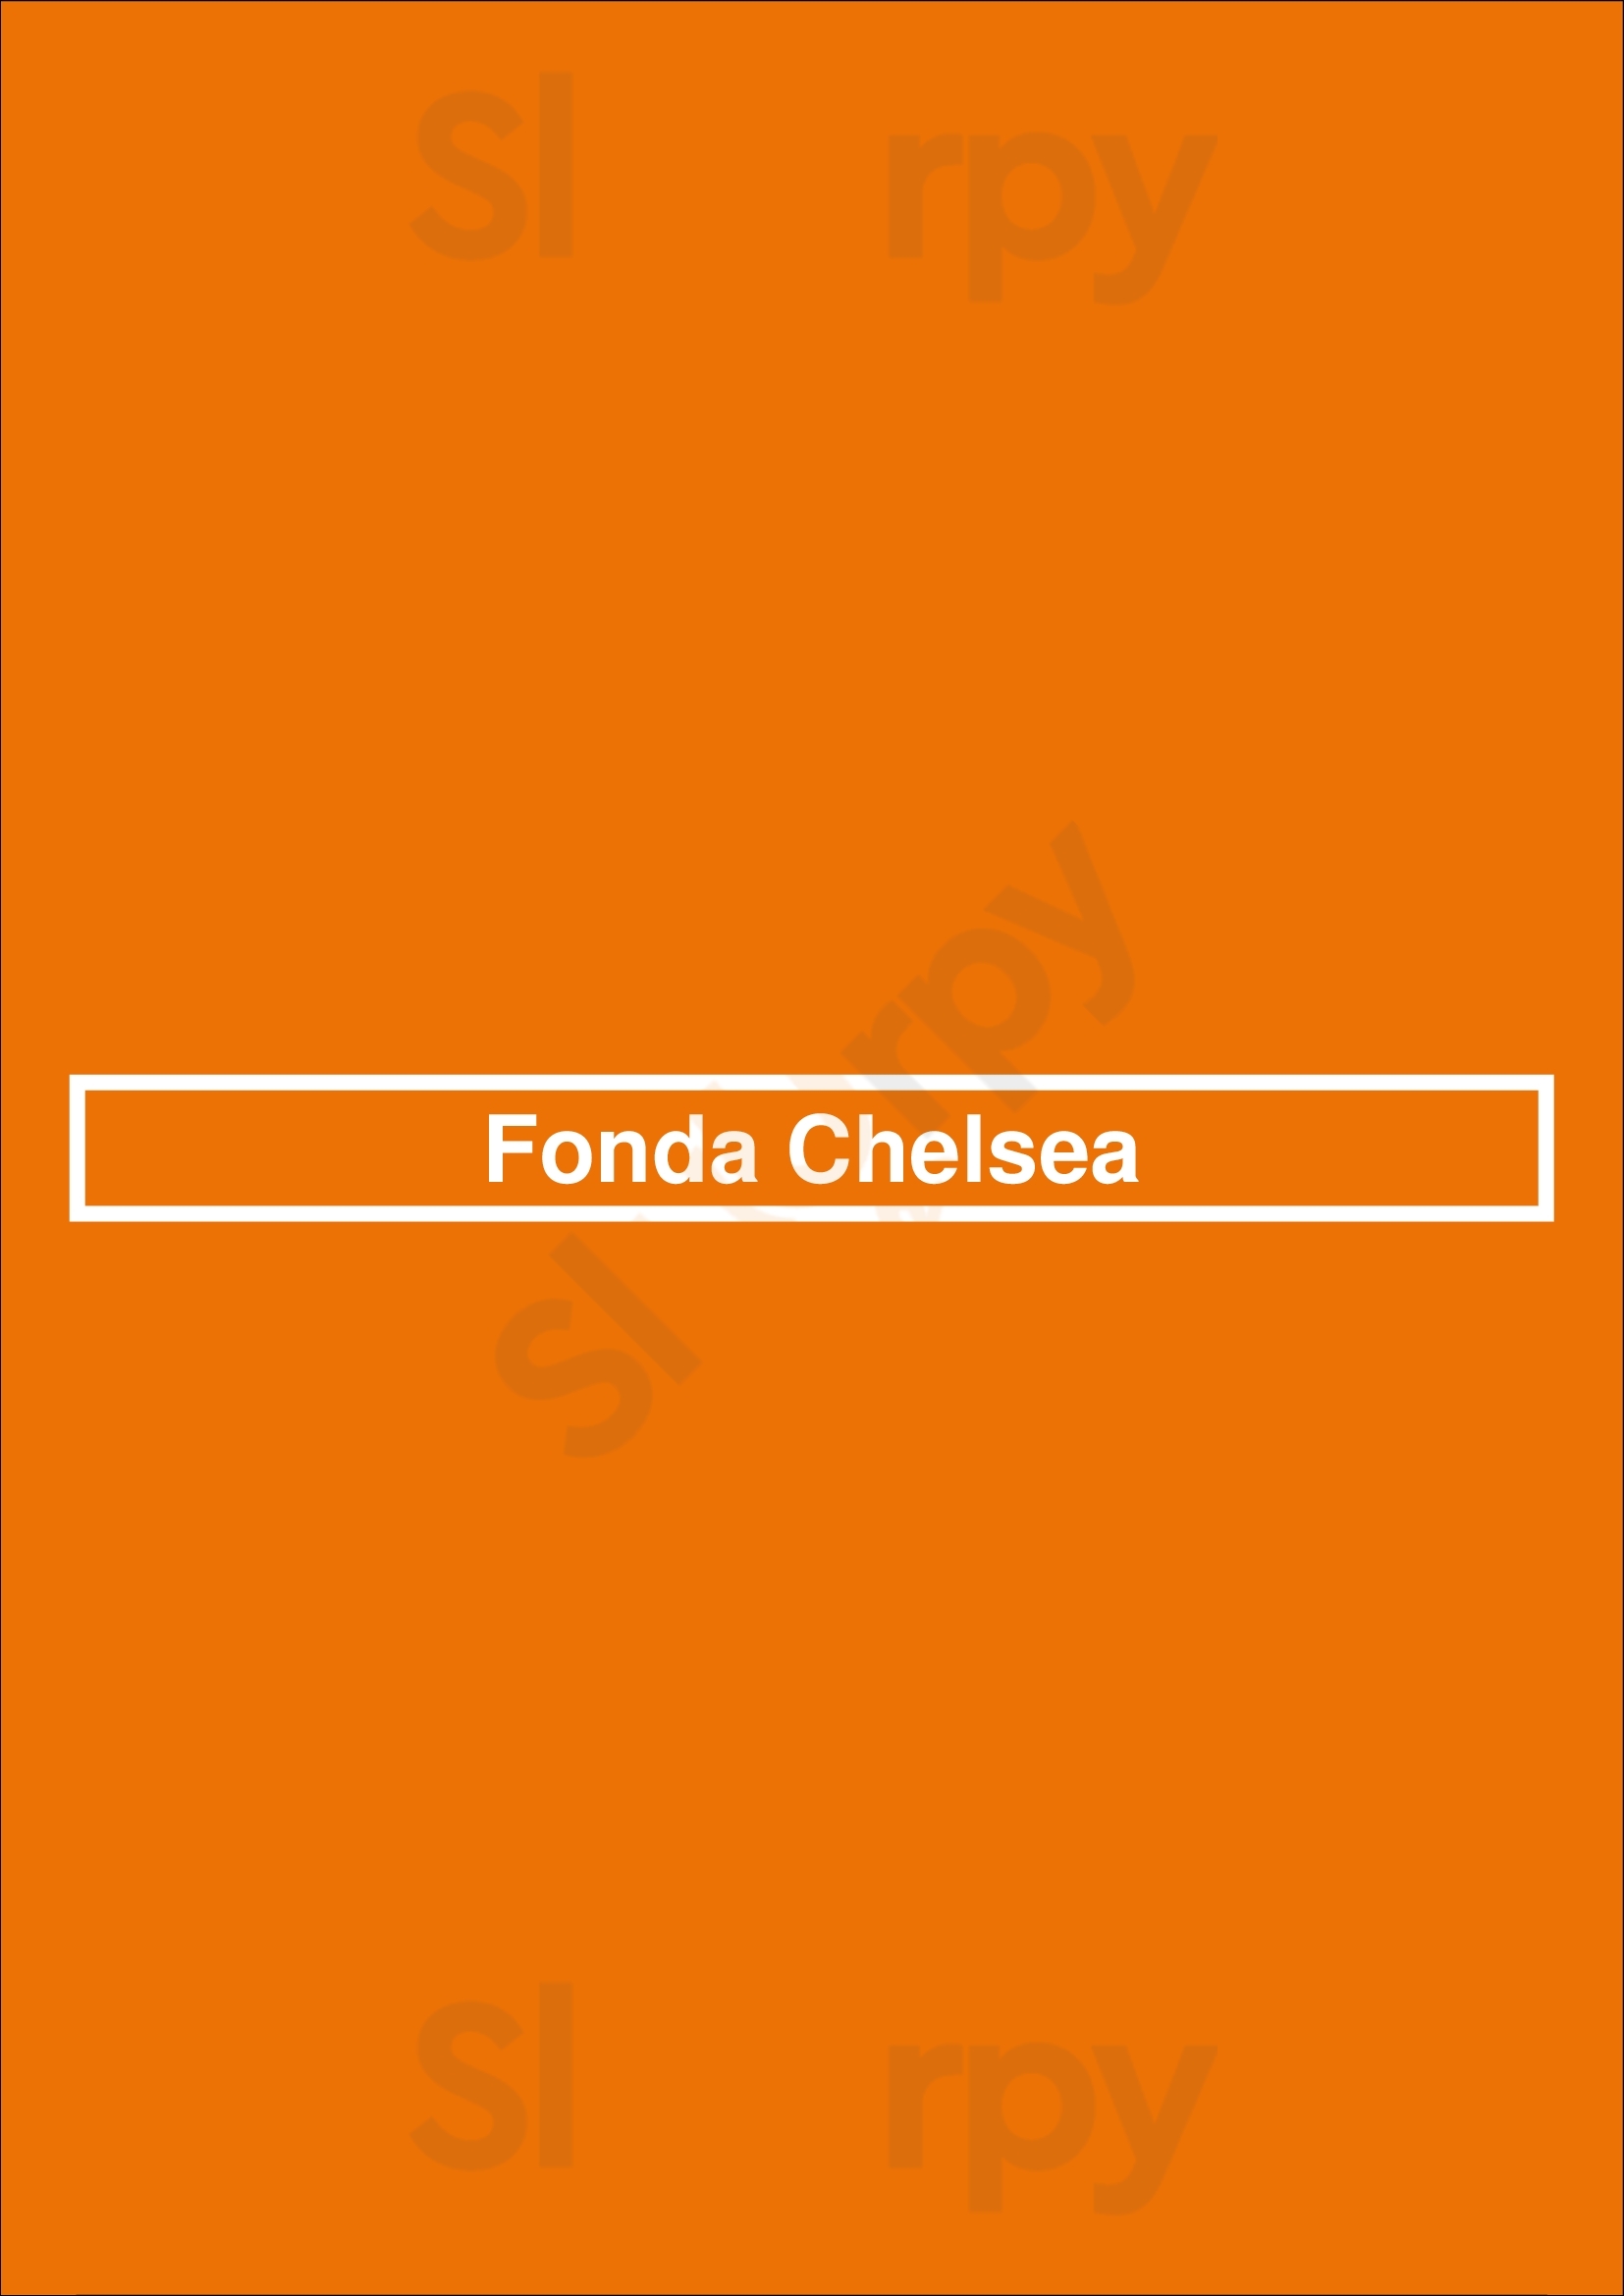 Fonda Chelsea New York City Menu - 1